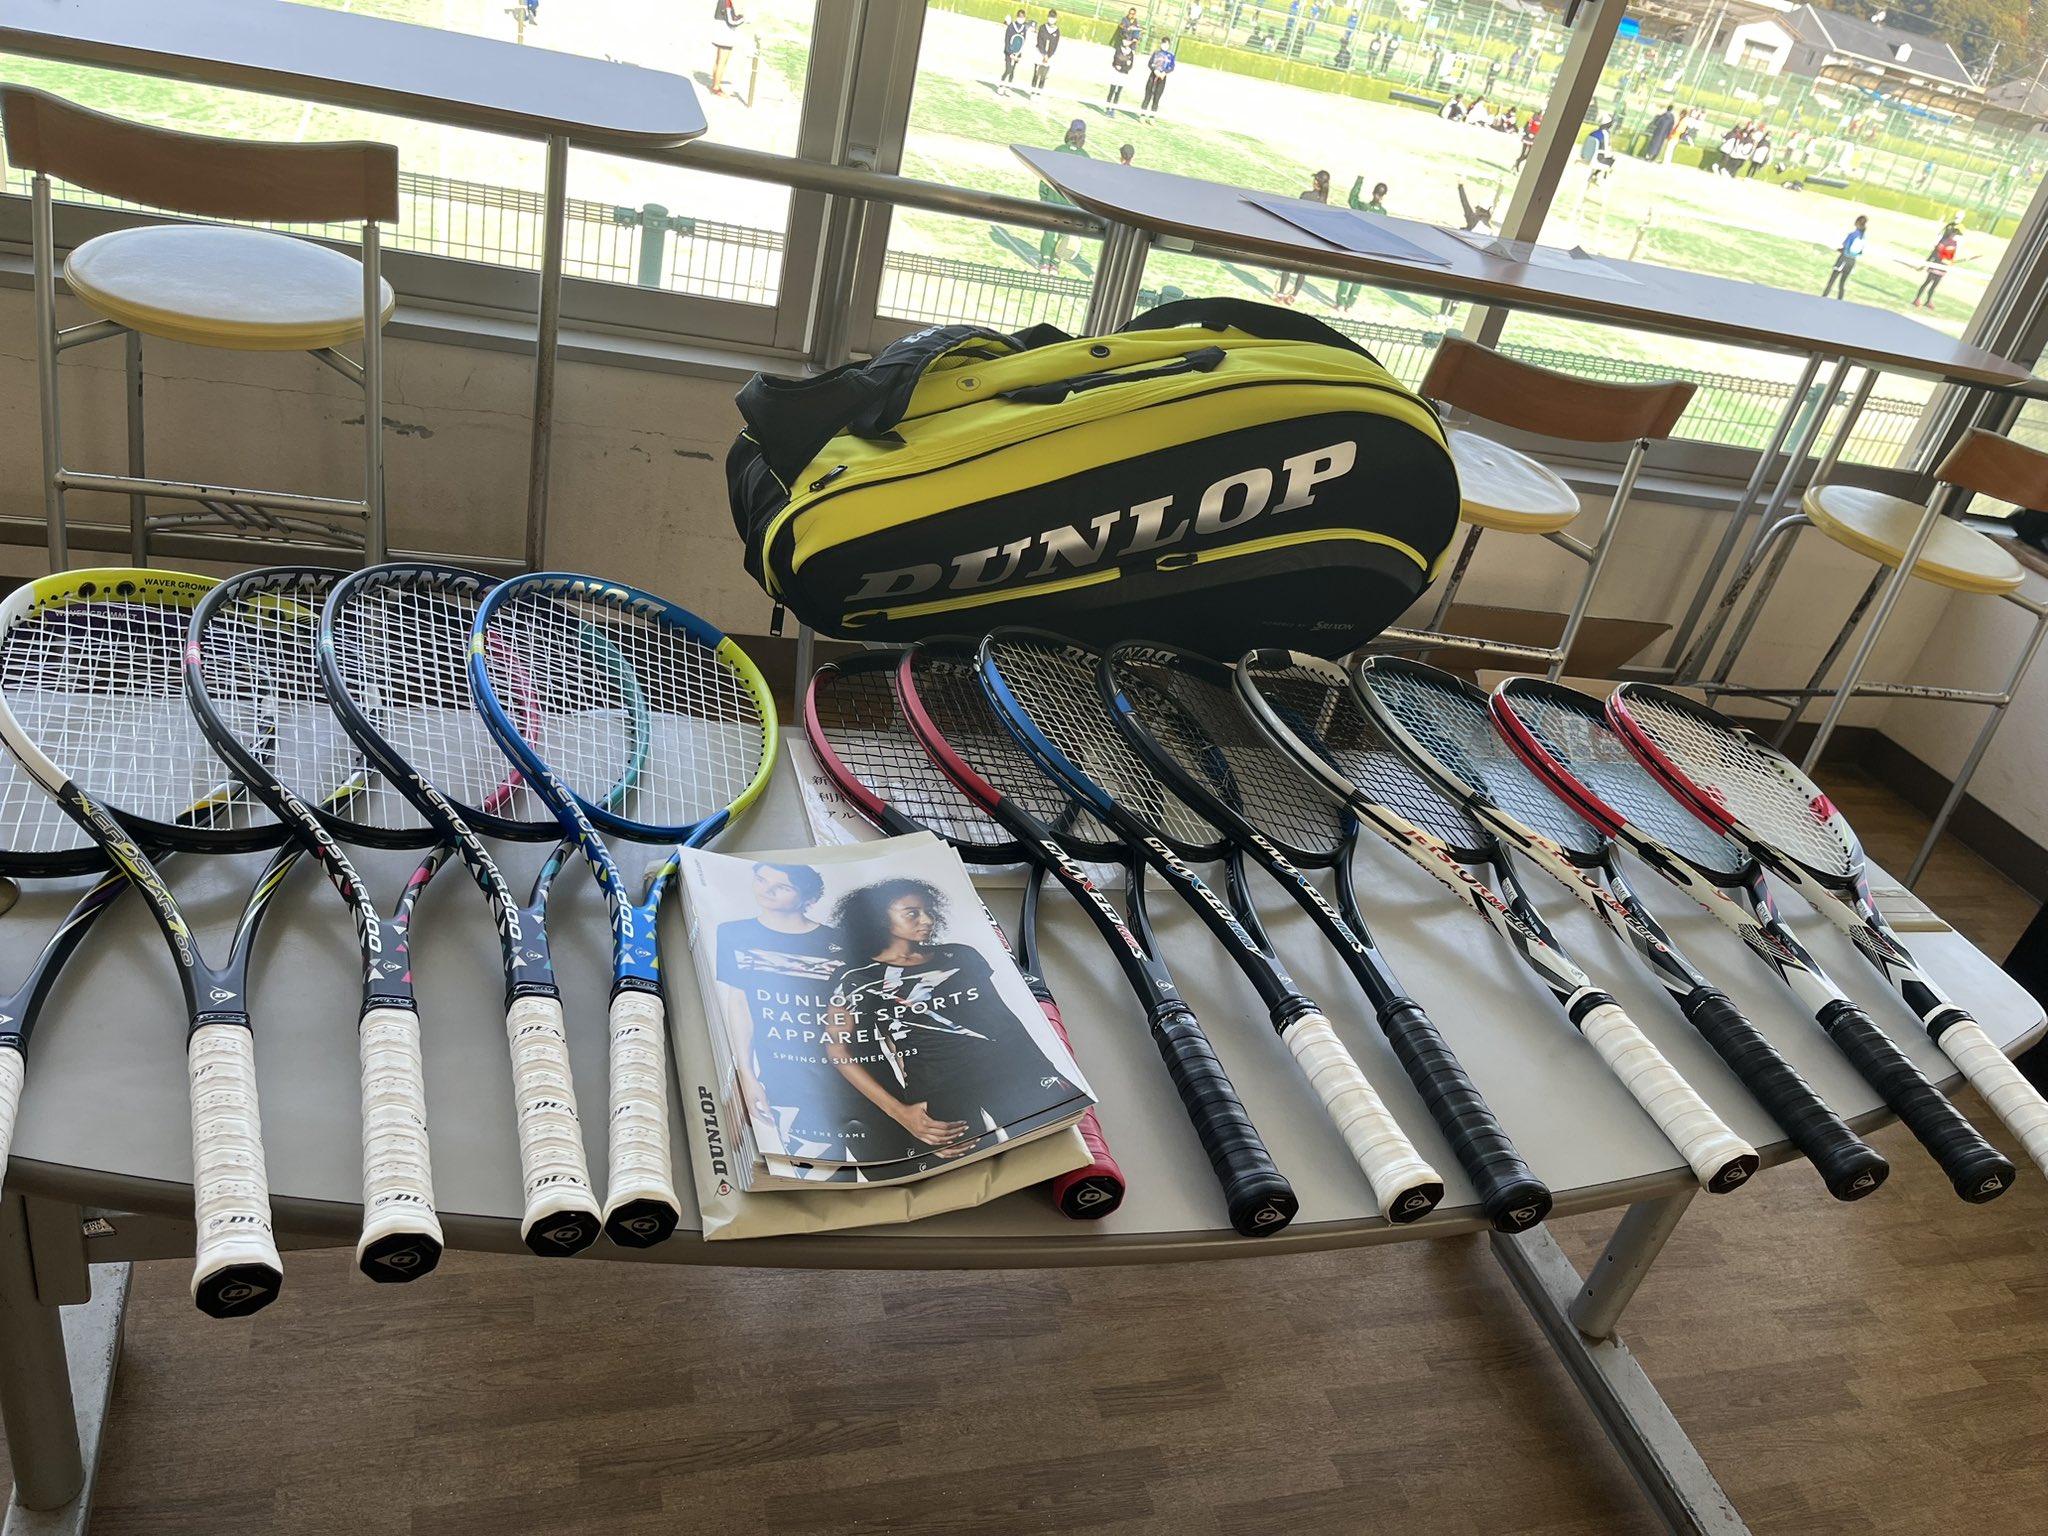 Dunlop Soft Tennis_ダンロップソフトテニス (@dunlopsoftennis) / Twitter